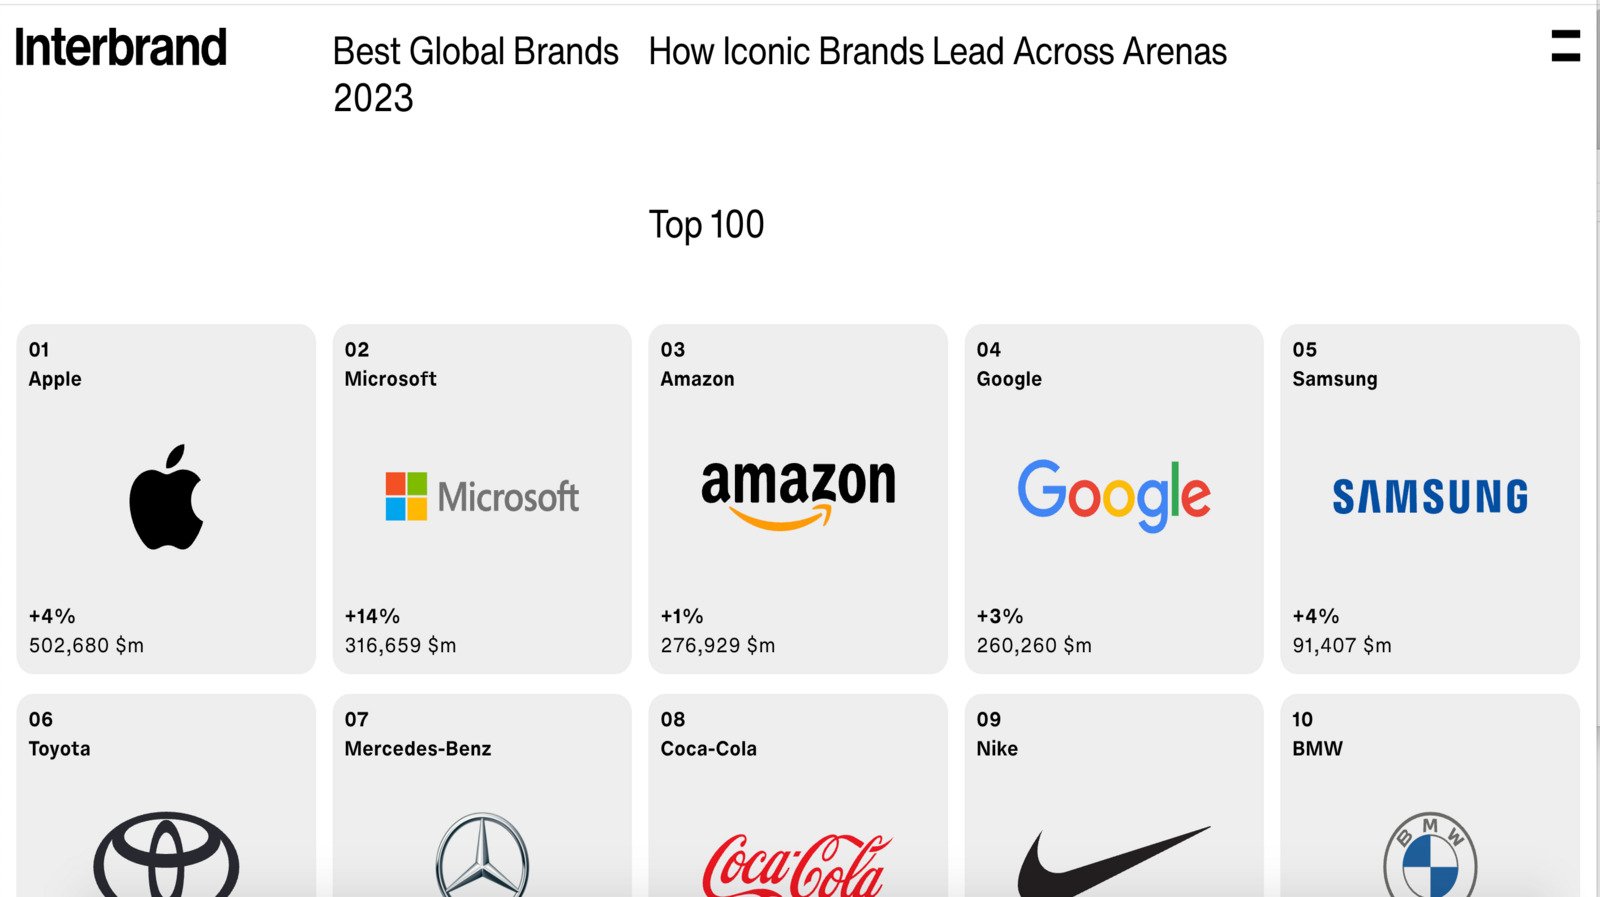 Interbrand şirketi, hazırladığı ”Best Global Brands 2023” çalışmasını duyurdu